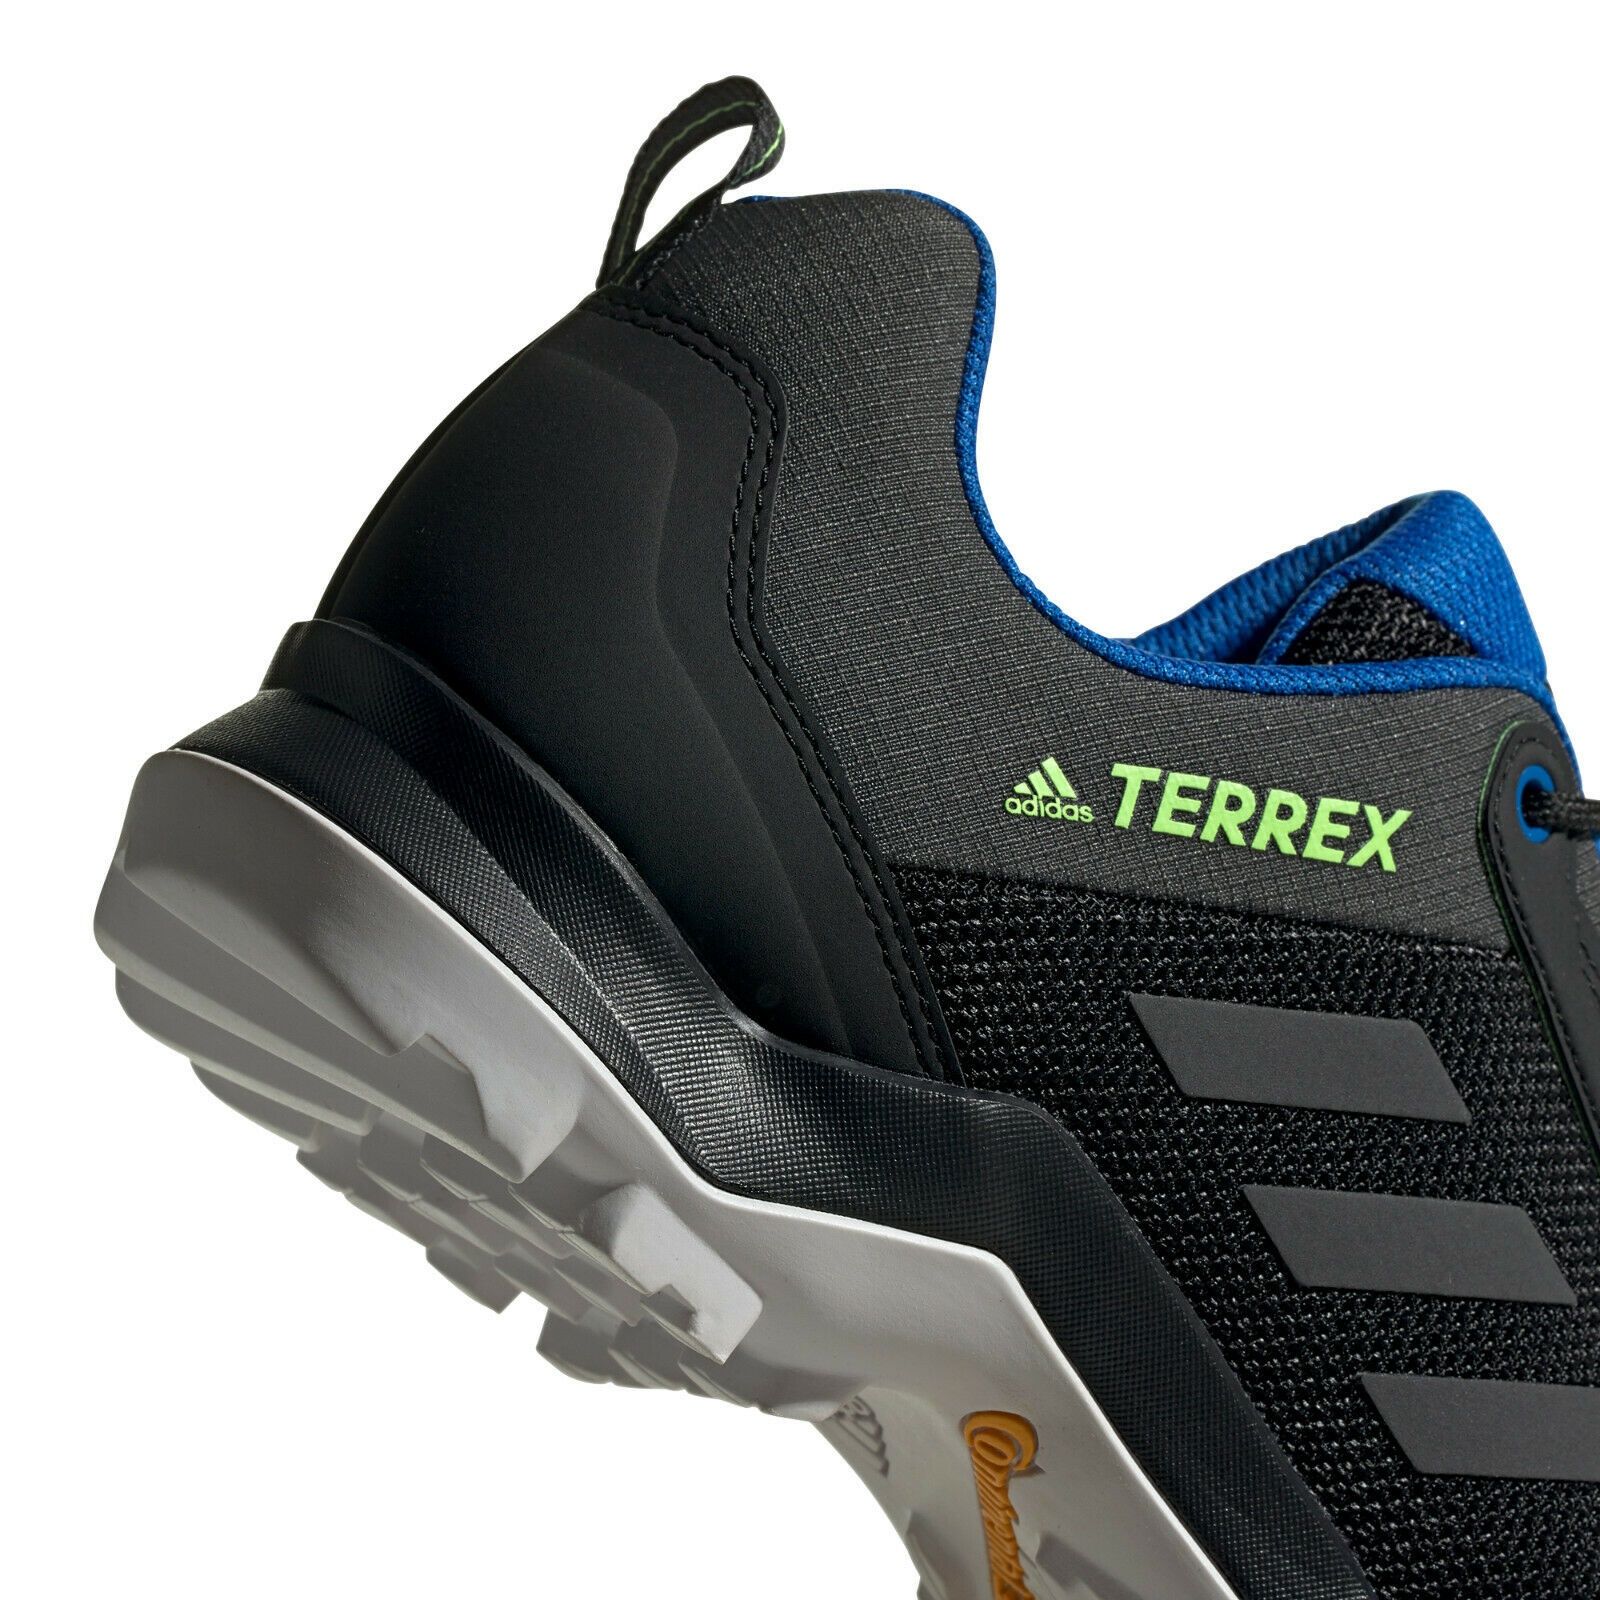 Adidas Terrex AX3, оригинал, кроссовки мужские.